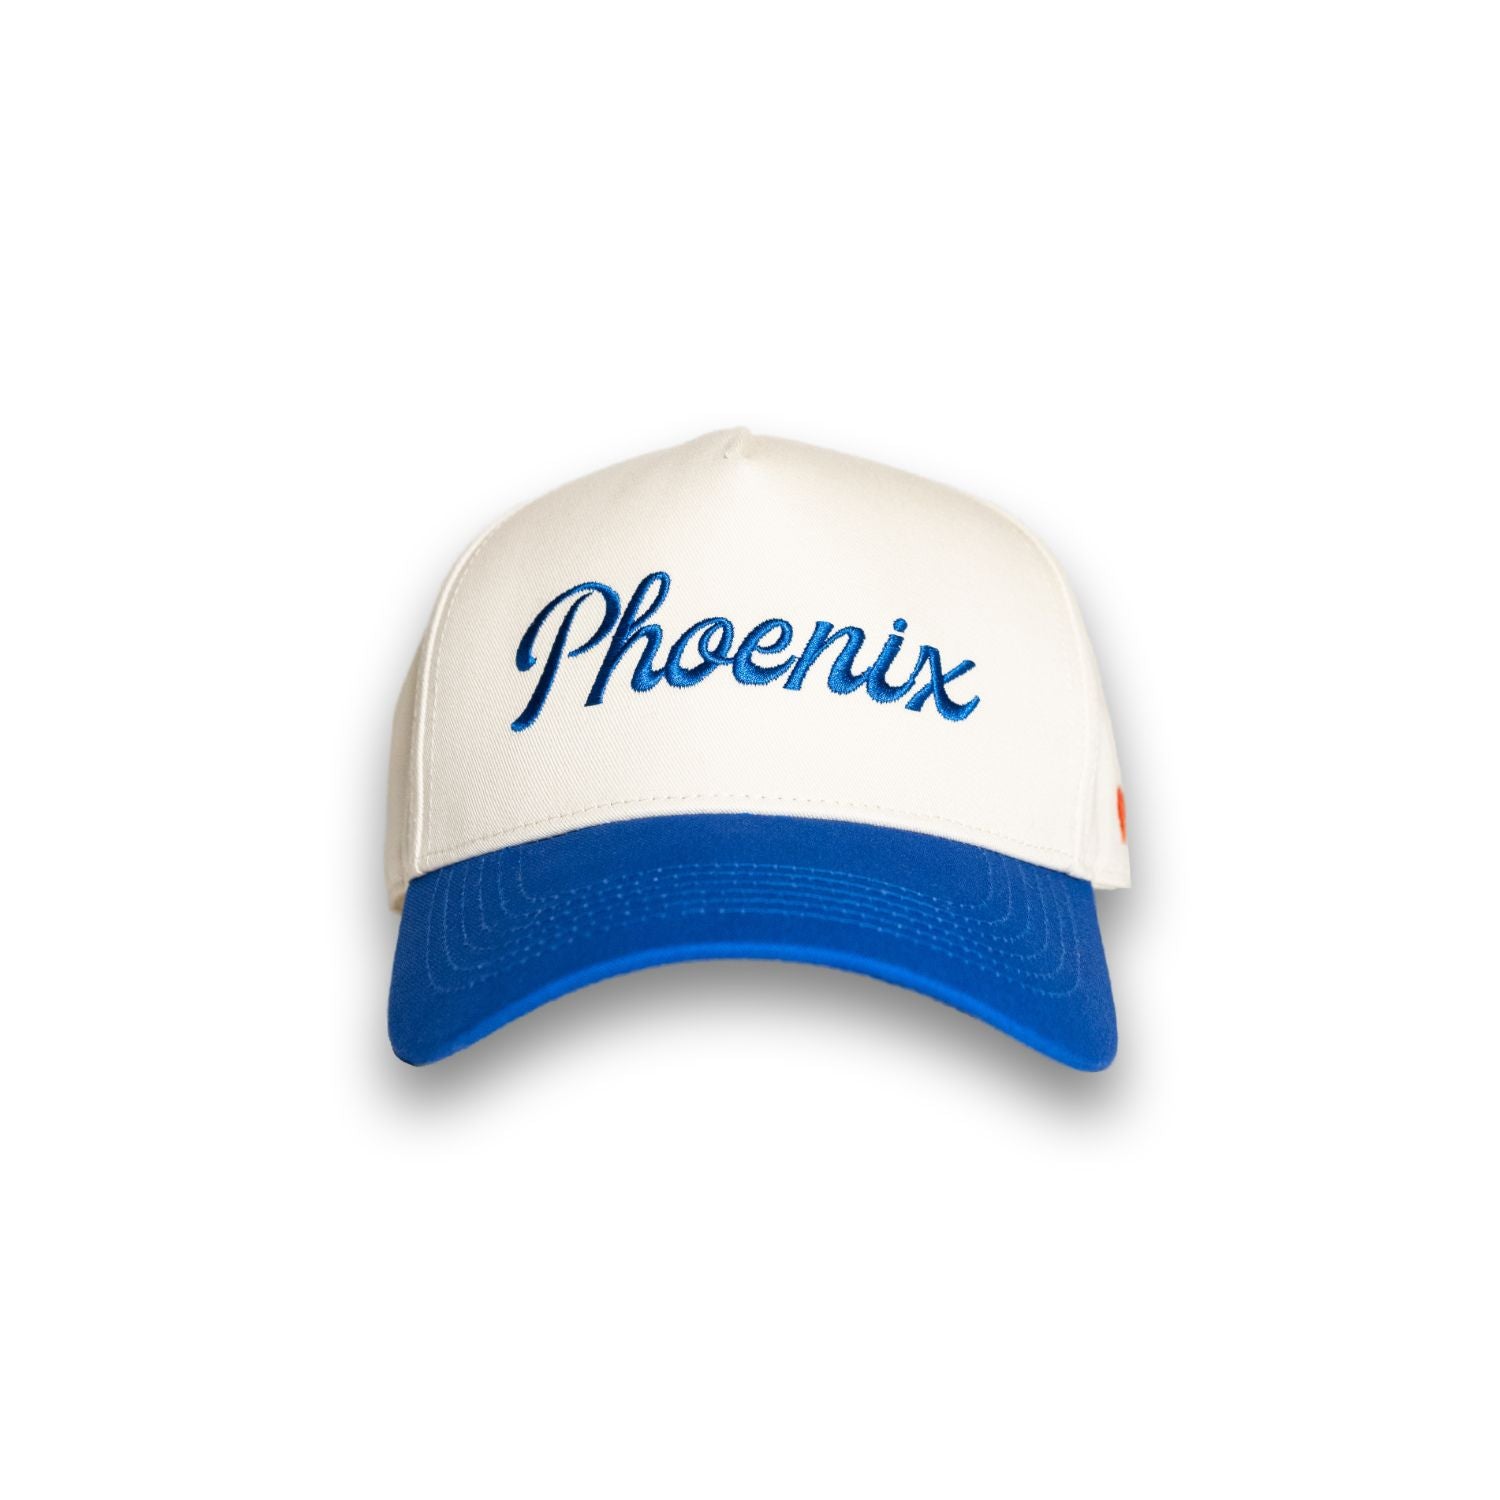 The Phoenix Hat